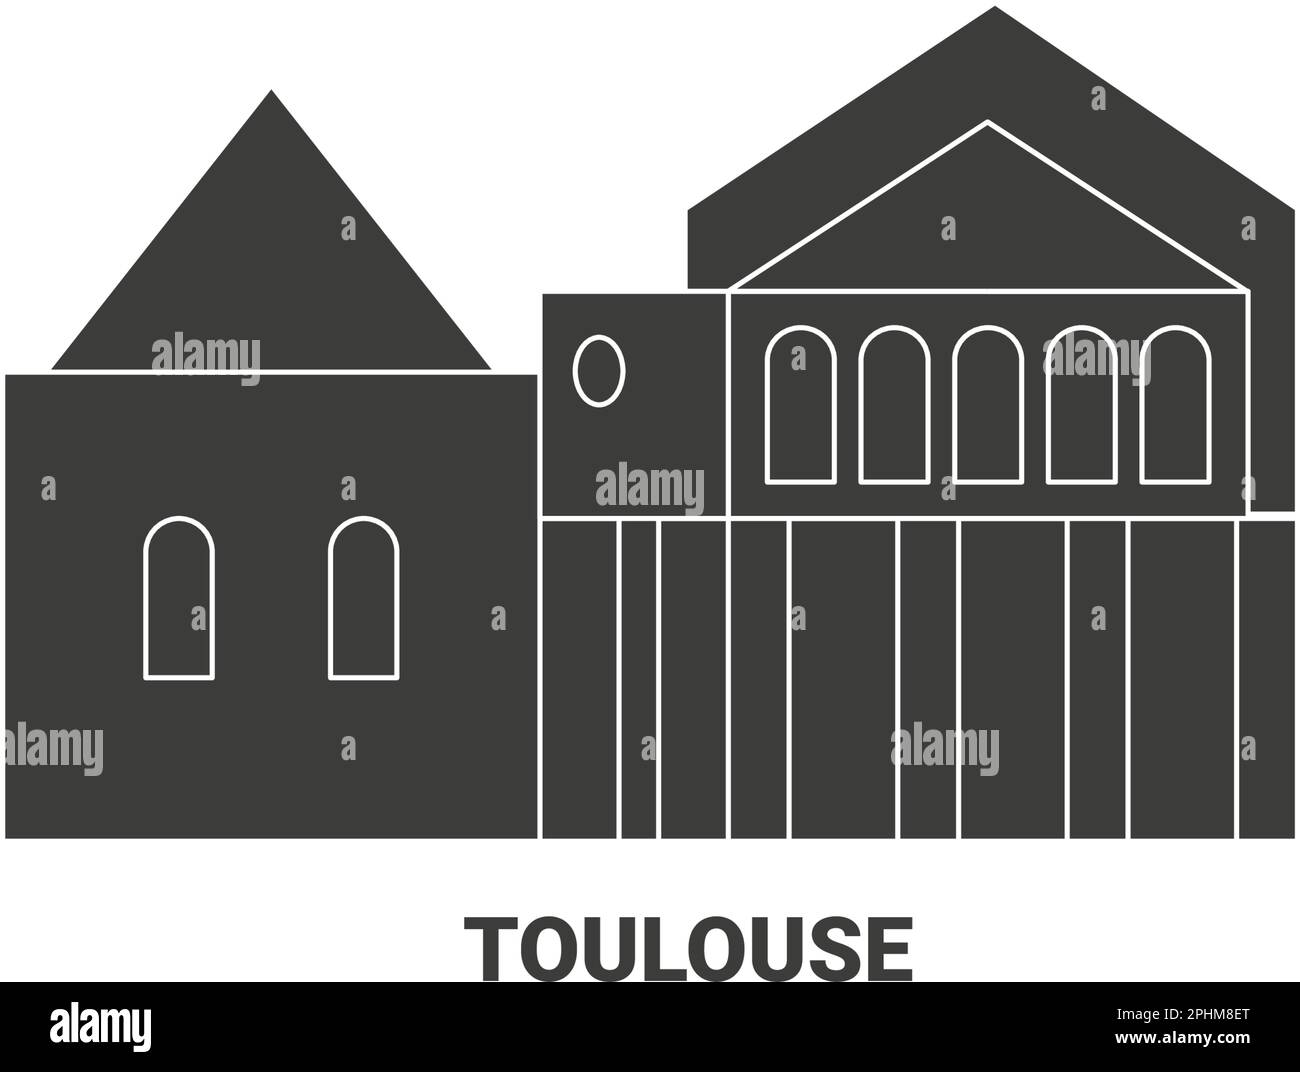 France, Toulouse travel landmark vector illustration Stock Vector